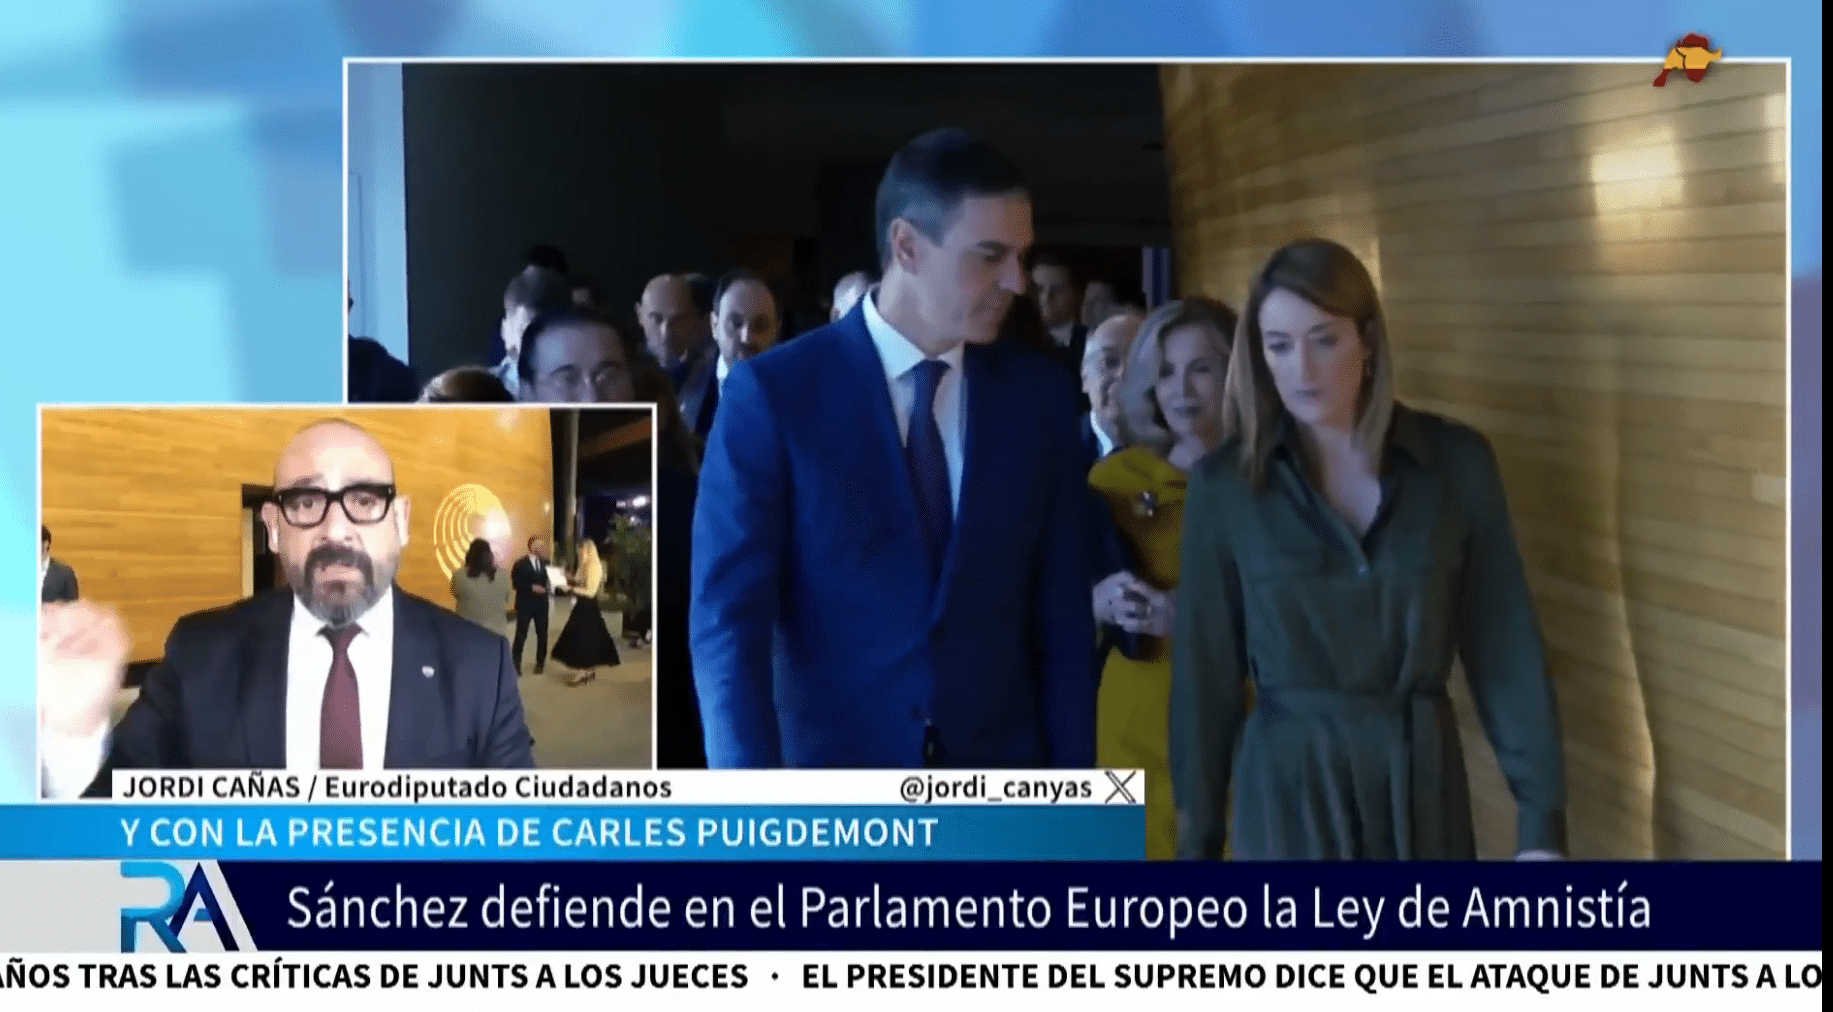  Así resume Jordi Cañas la visita de Sánchez al Parlamento Europeo: «En Europa preocupa la amnistía y lo que significa el pacto con Junts»